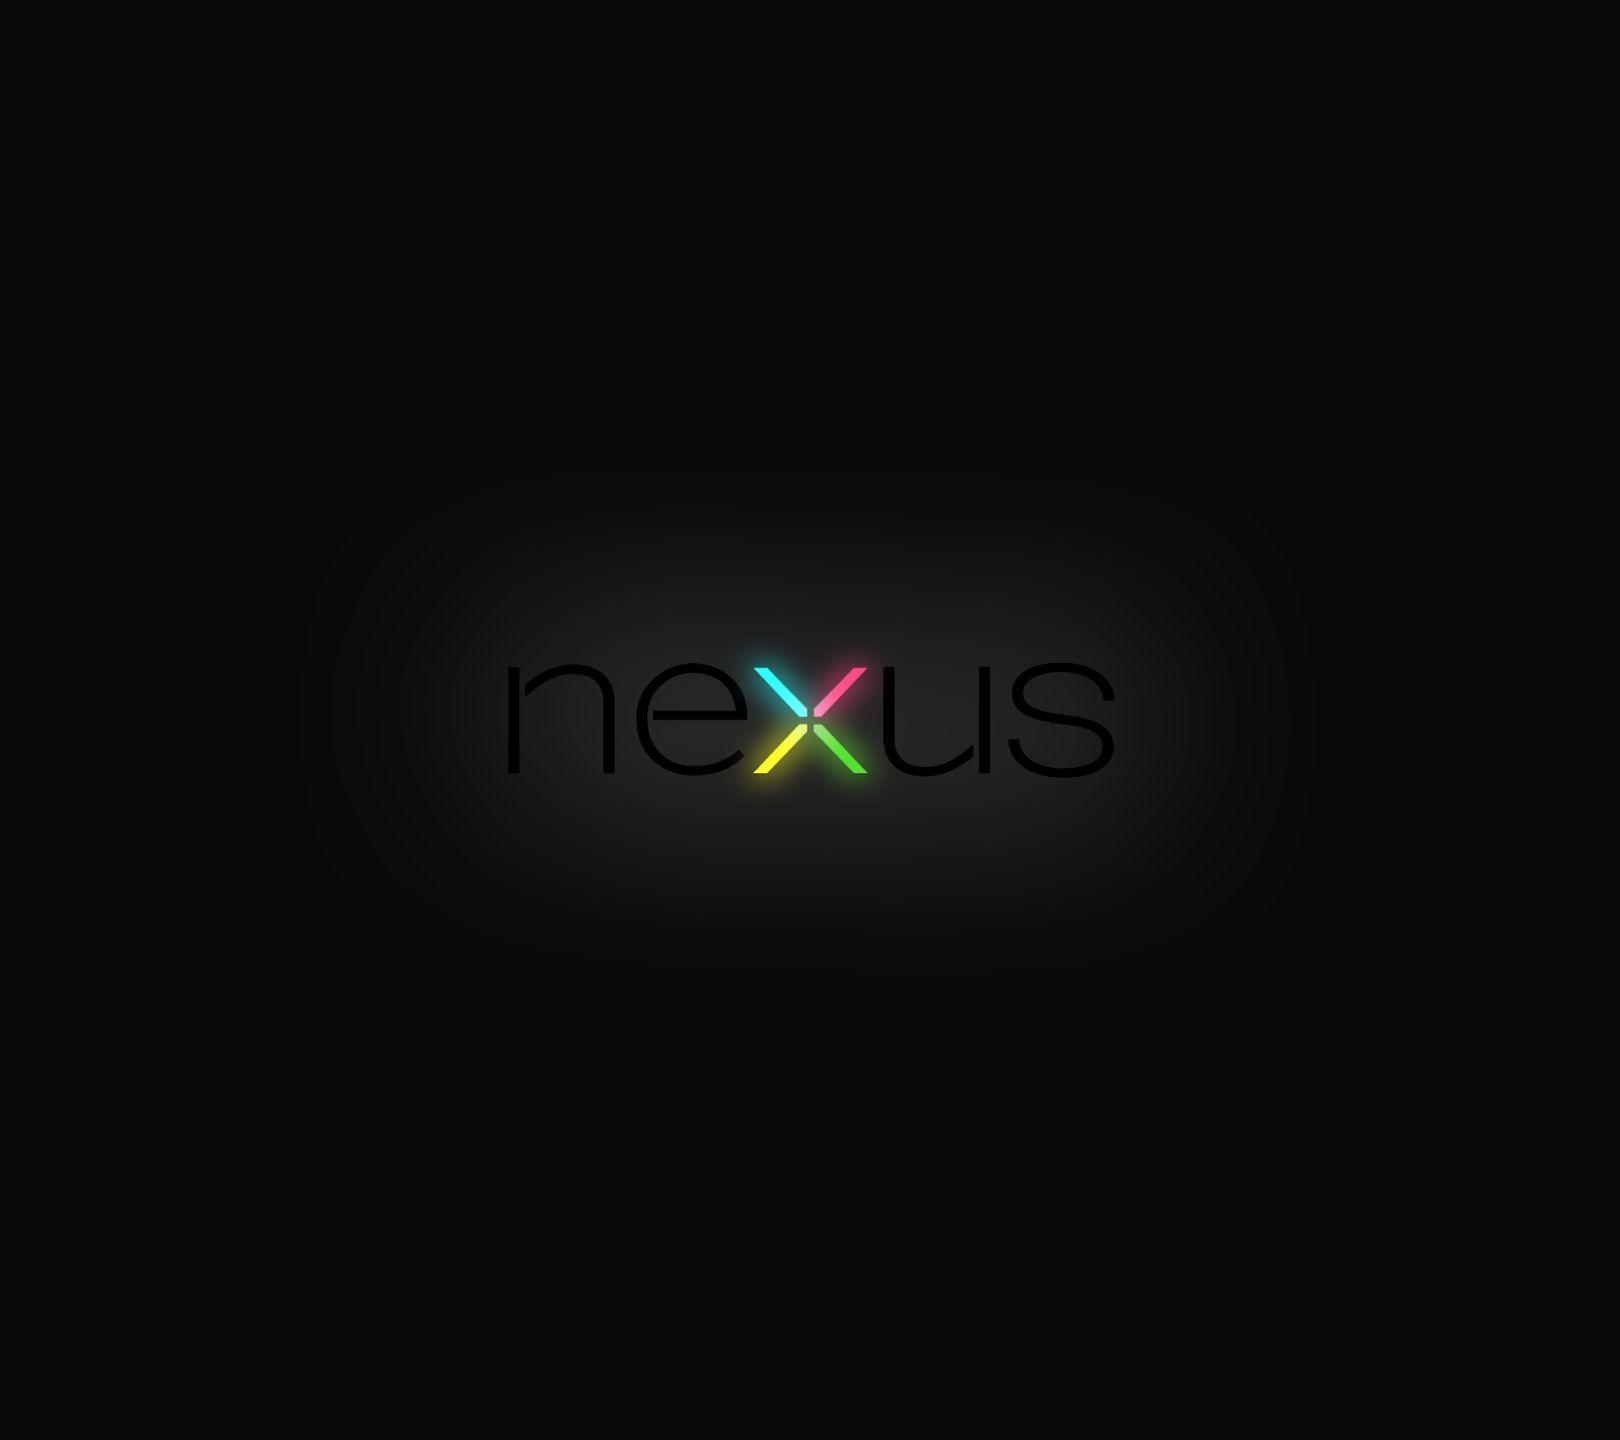 Nexus Wallpaper Is Wallapers For Pc Desktop Laptop Or Gadget Nexus